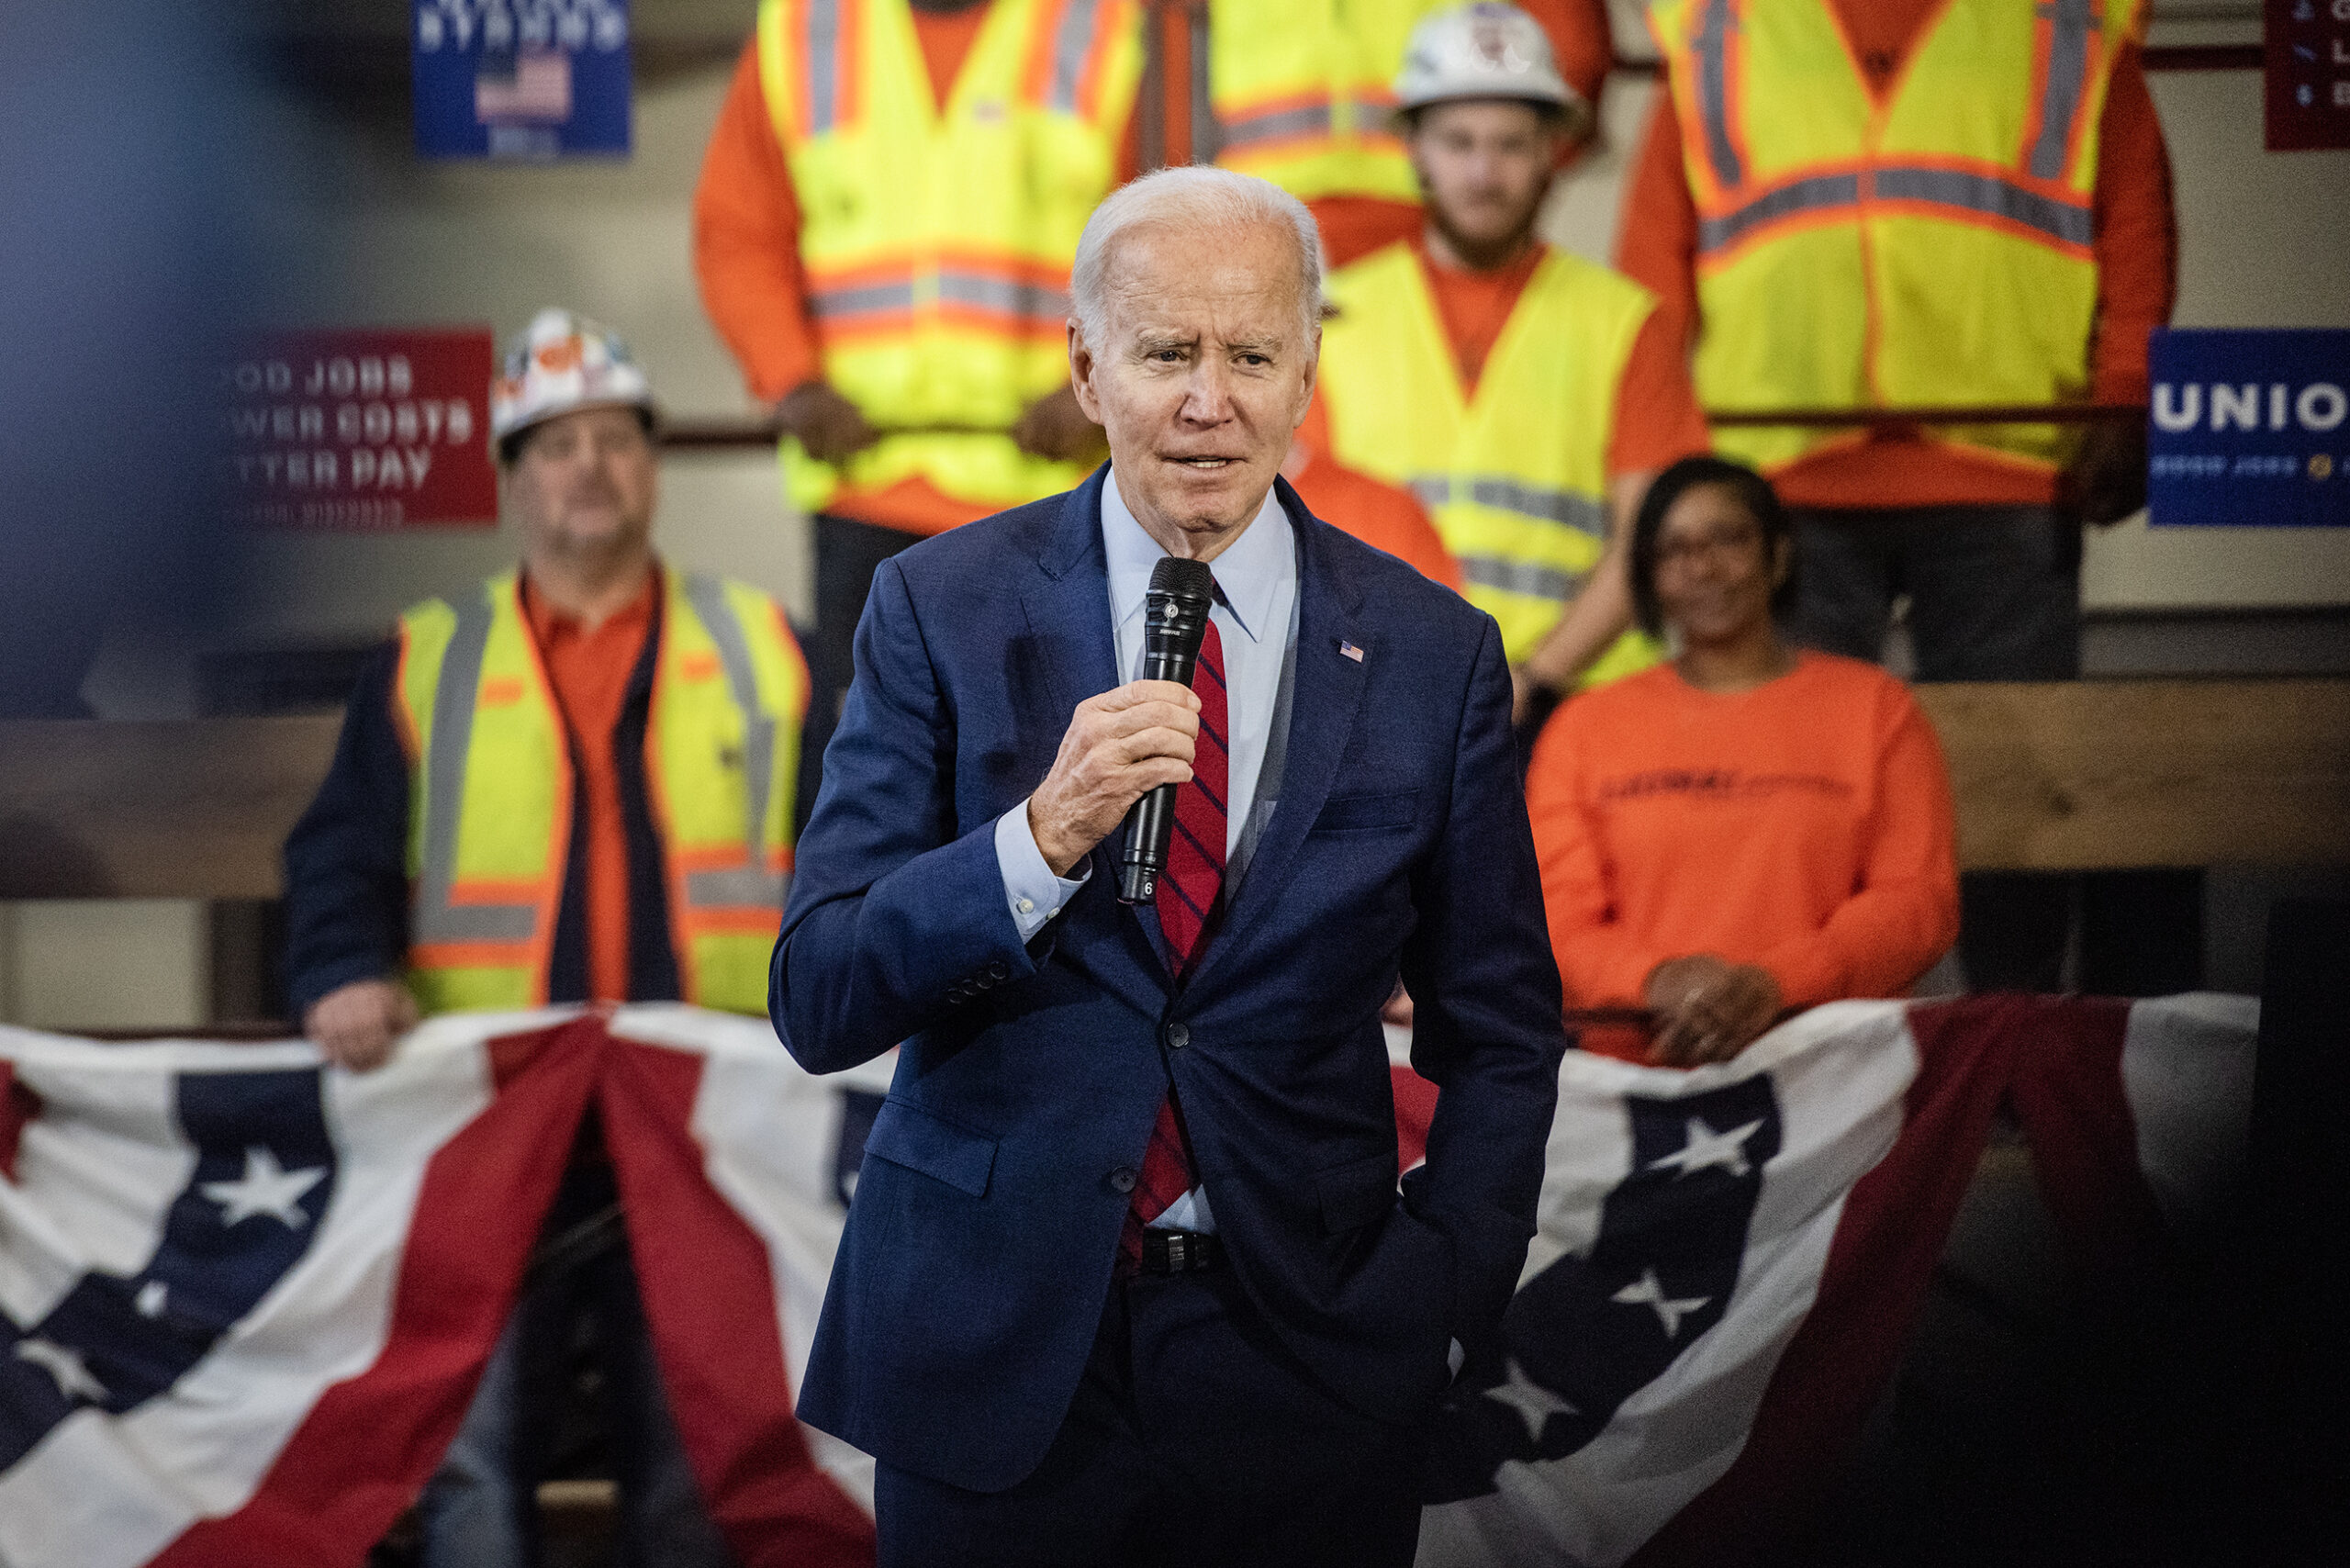 President Joe Biden speaks about job creation near Madison